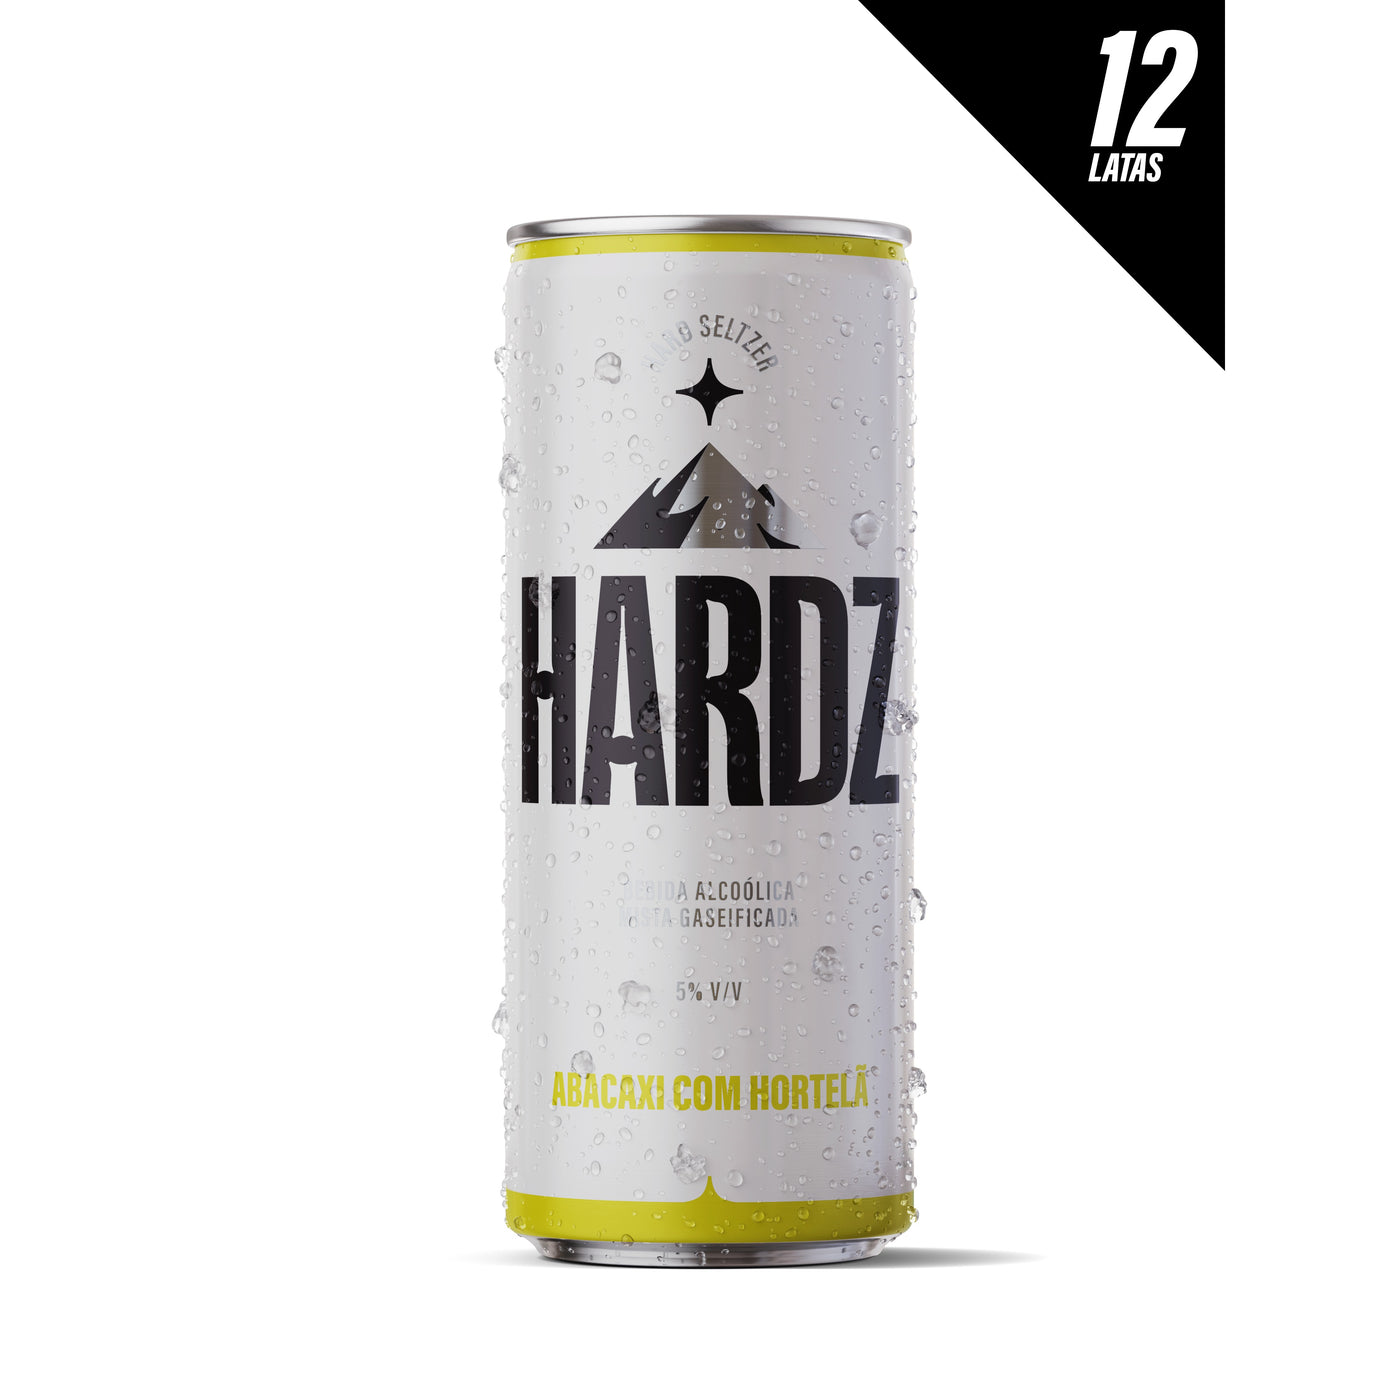 Hardz Abacaxi/Hortelã - 12 Latas 355mL